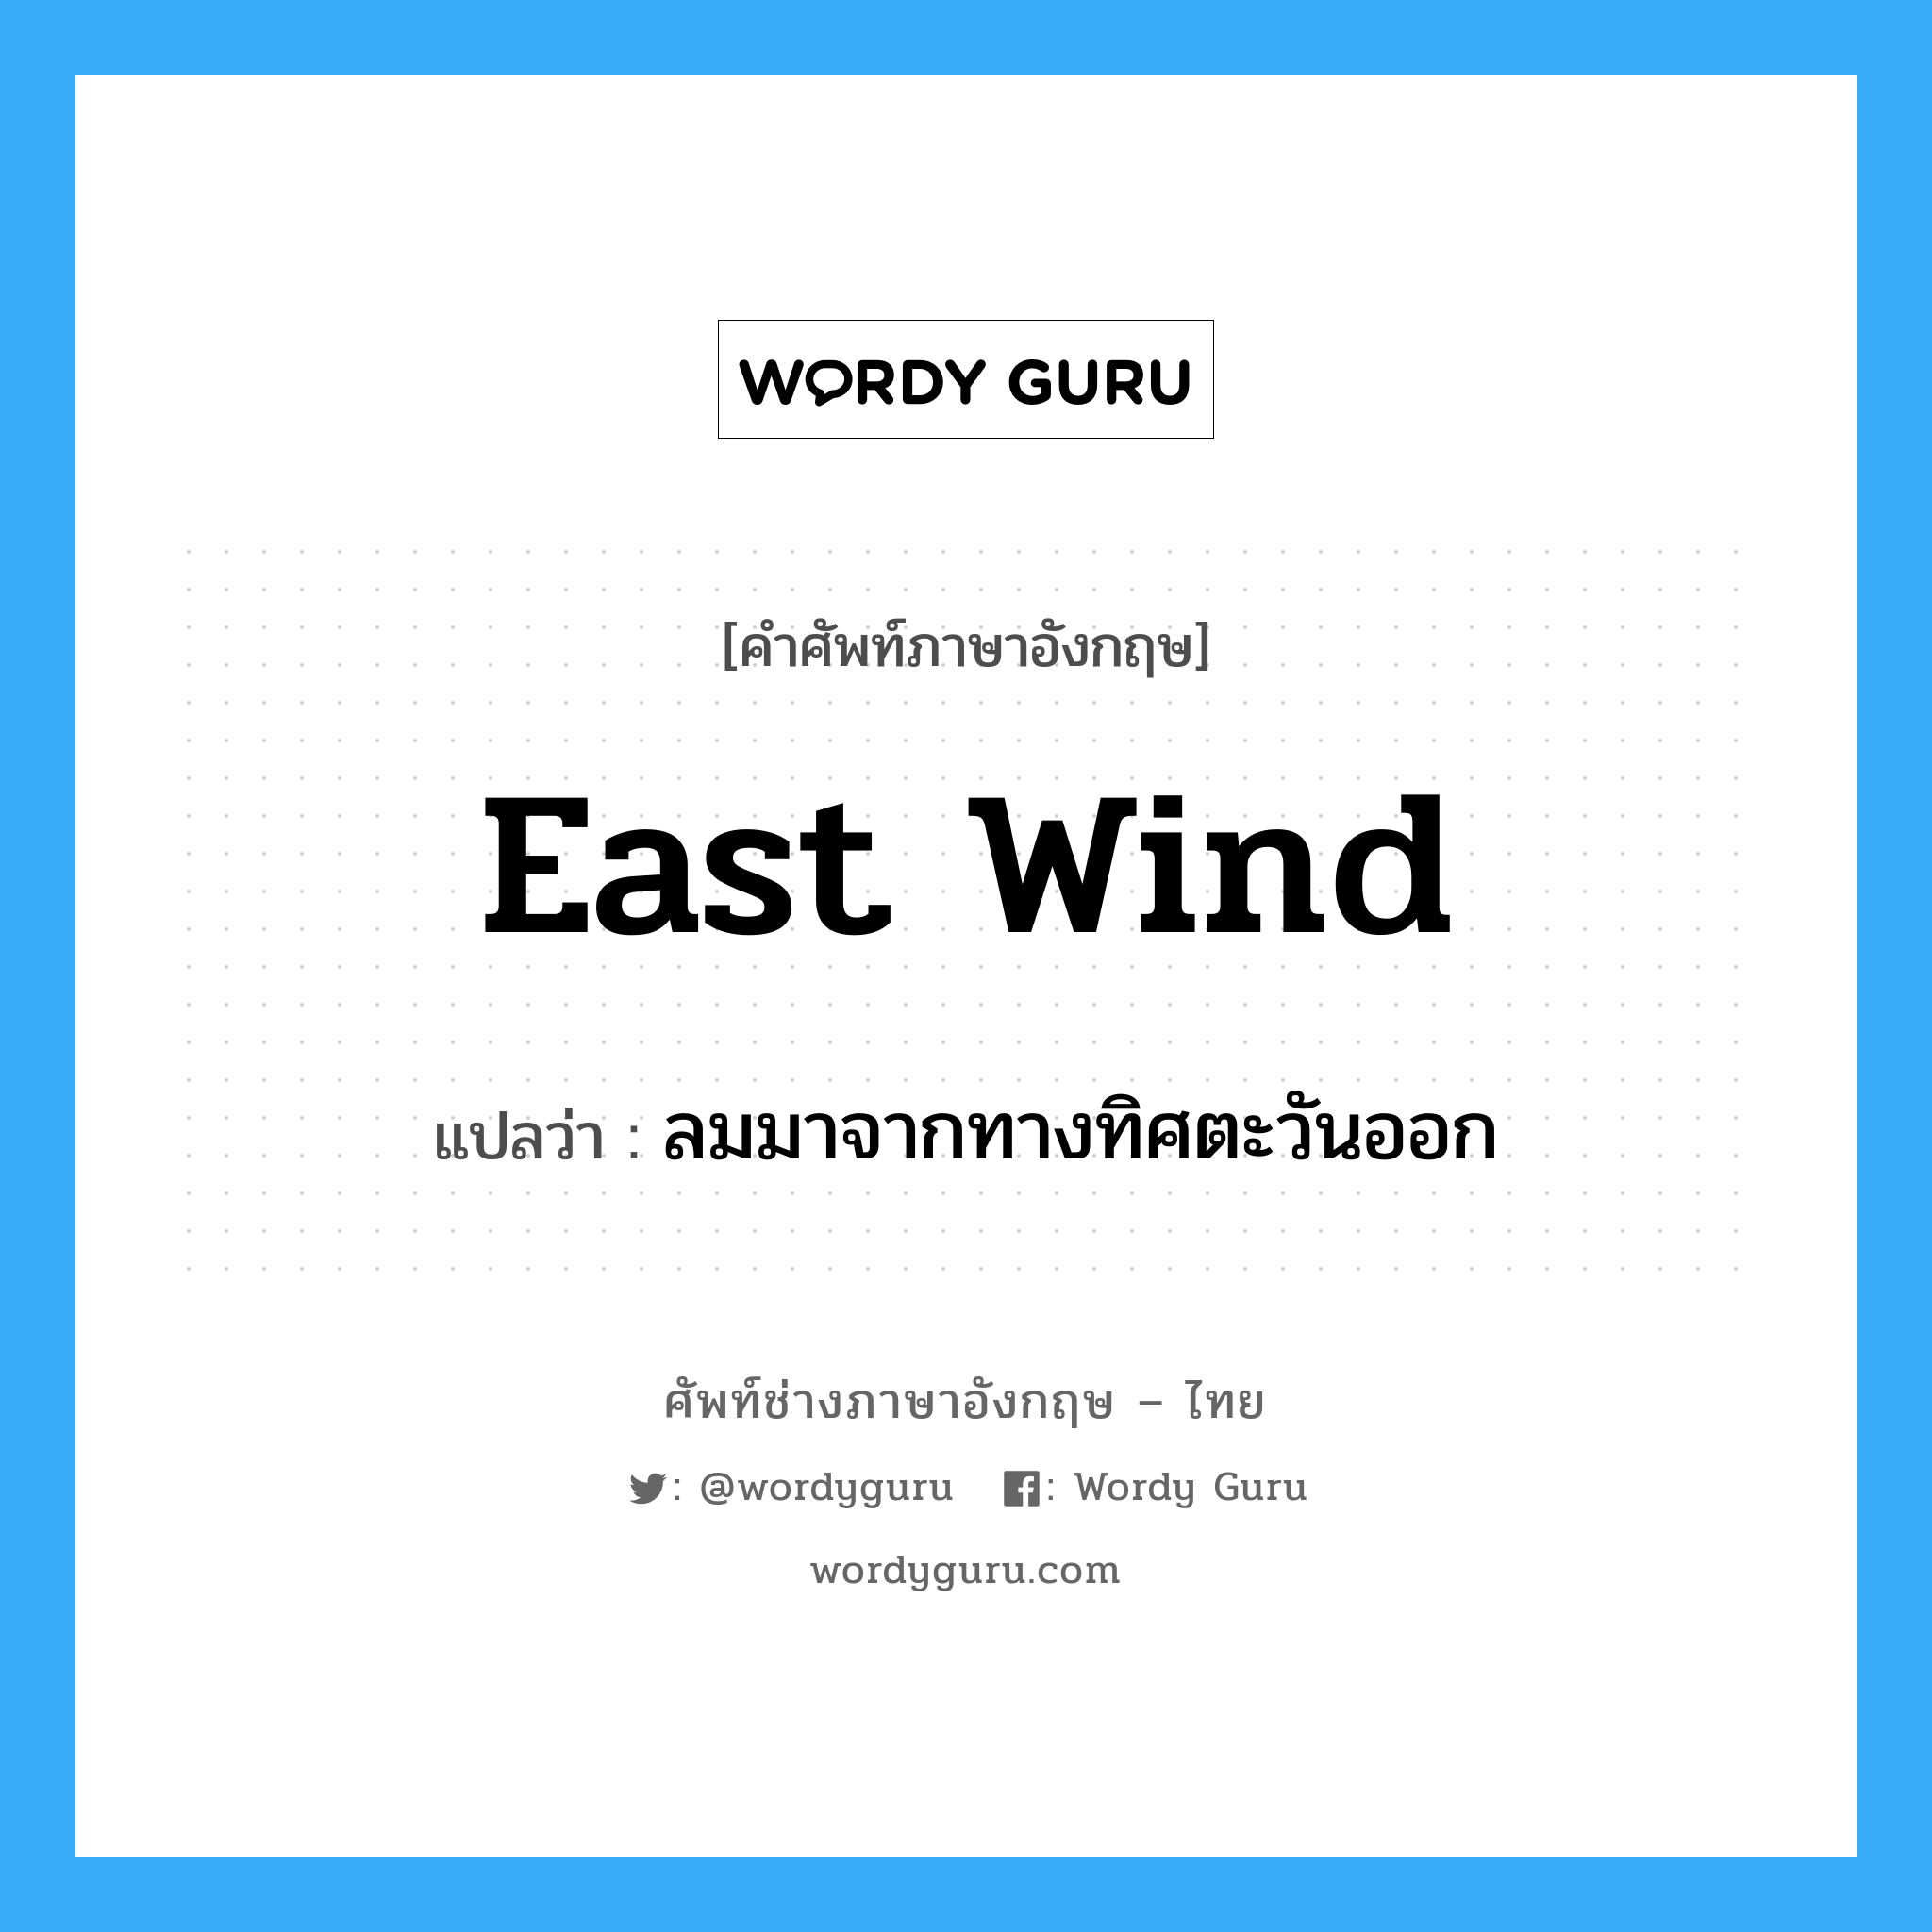 ลมมาจากทางทิศตะวันออก ภาษาอังกฤษ?, คำศัพท์ช่างภาษาอังกฤษ - ไทย ลมมาจากทางทิศตะวันออก คำศัพท์ภาษาอังกฤษ ลมมาจากทางทิศตะวันออก แปลว่า east wind